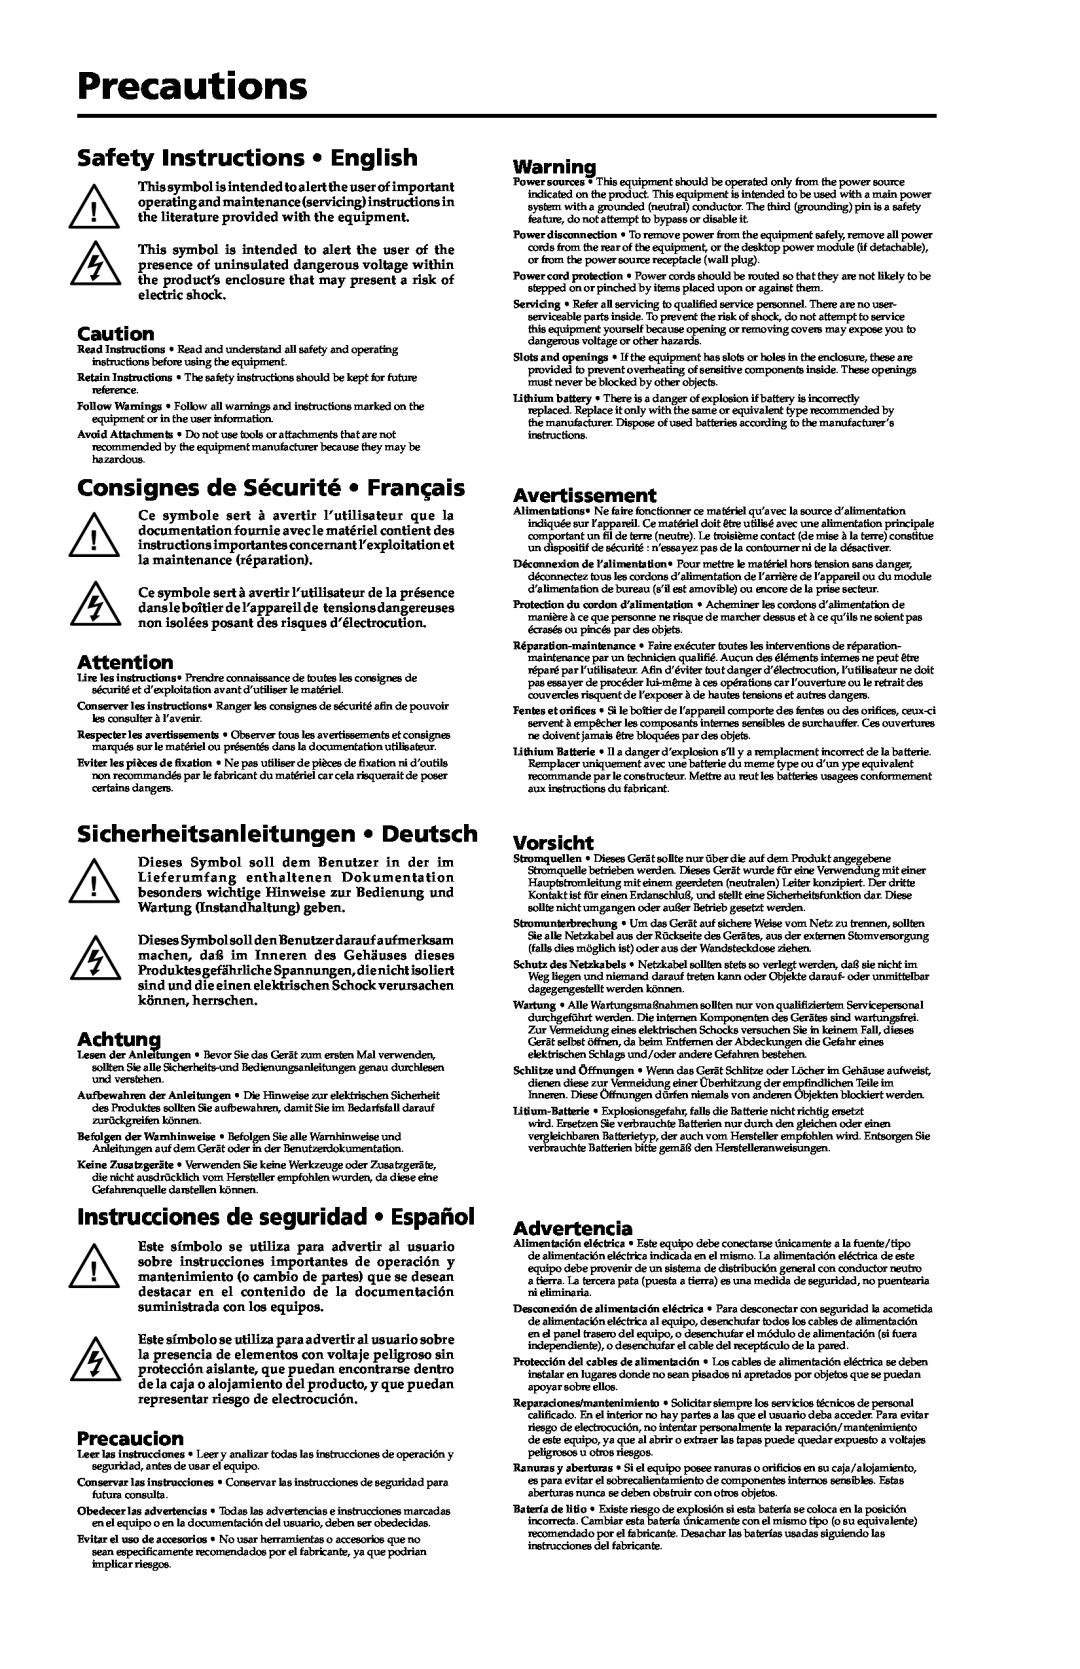 Extron electronic MTP U R RSA SEQ Precautions, Safety Instructions English, Consignes de Sécurité Français, Avertissement 